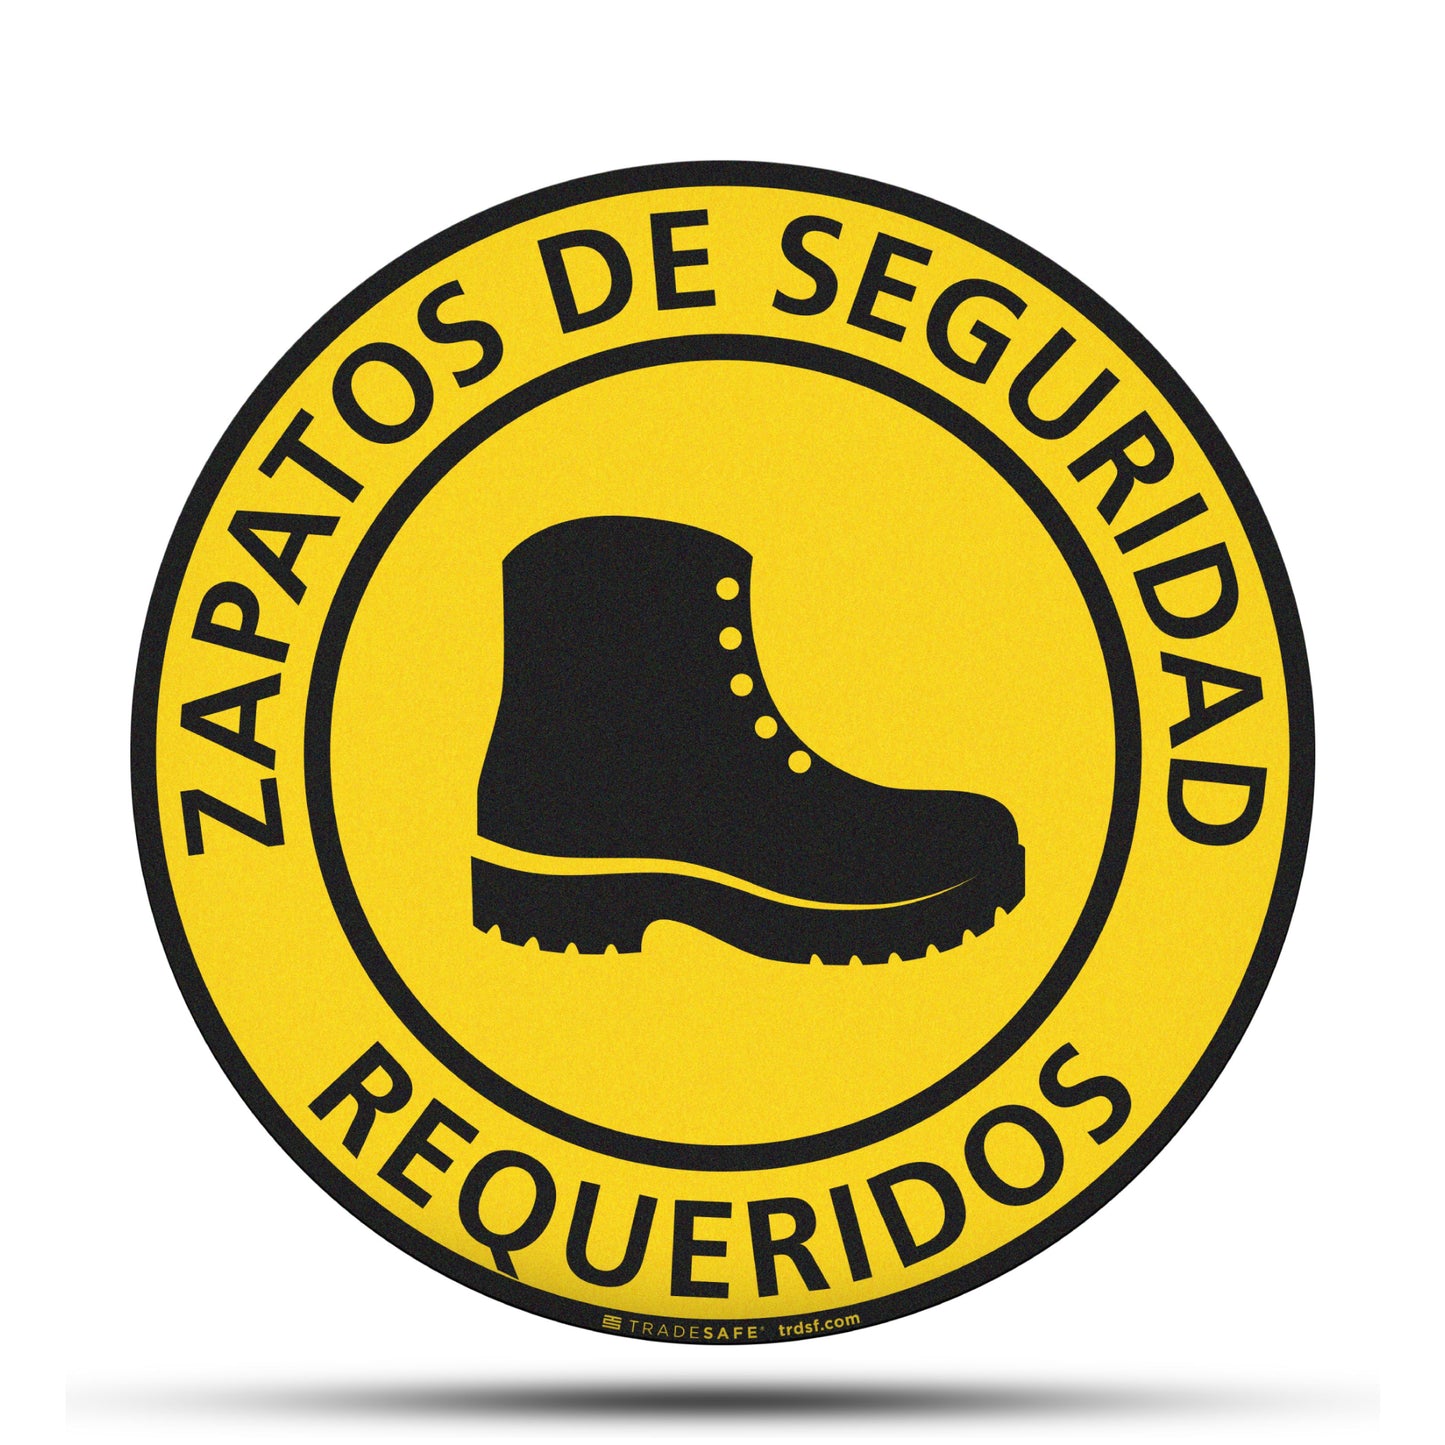 "zapatos de seguridad requeridos" sign vinyl sticker